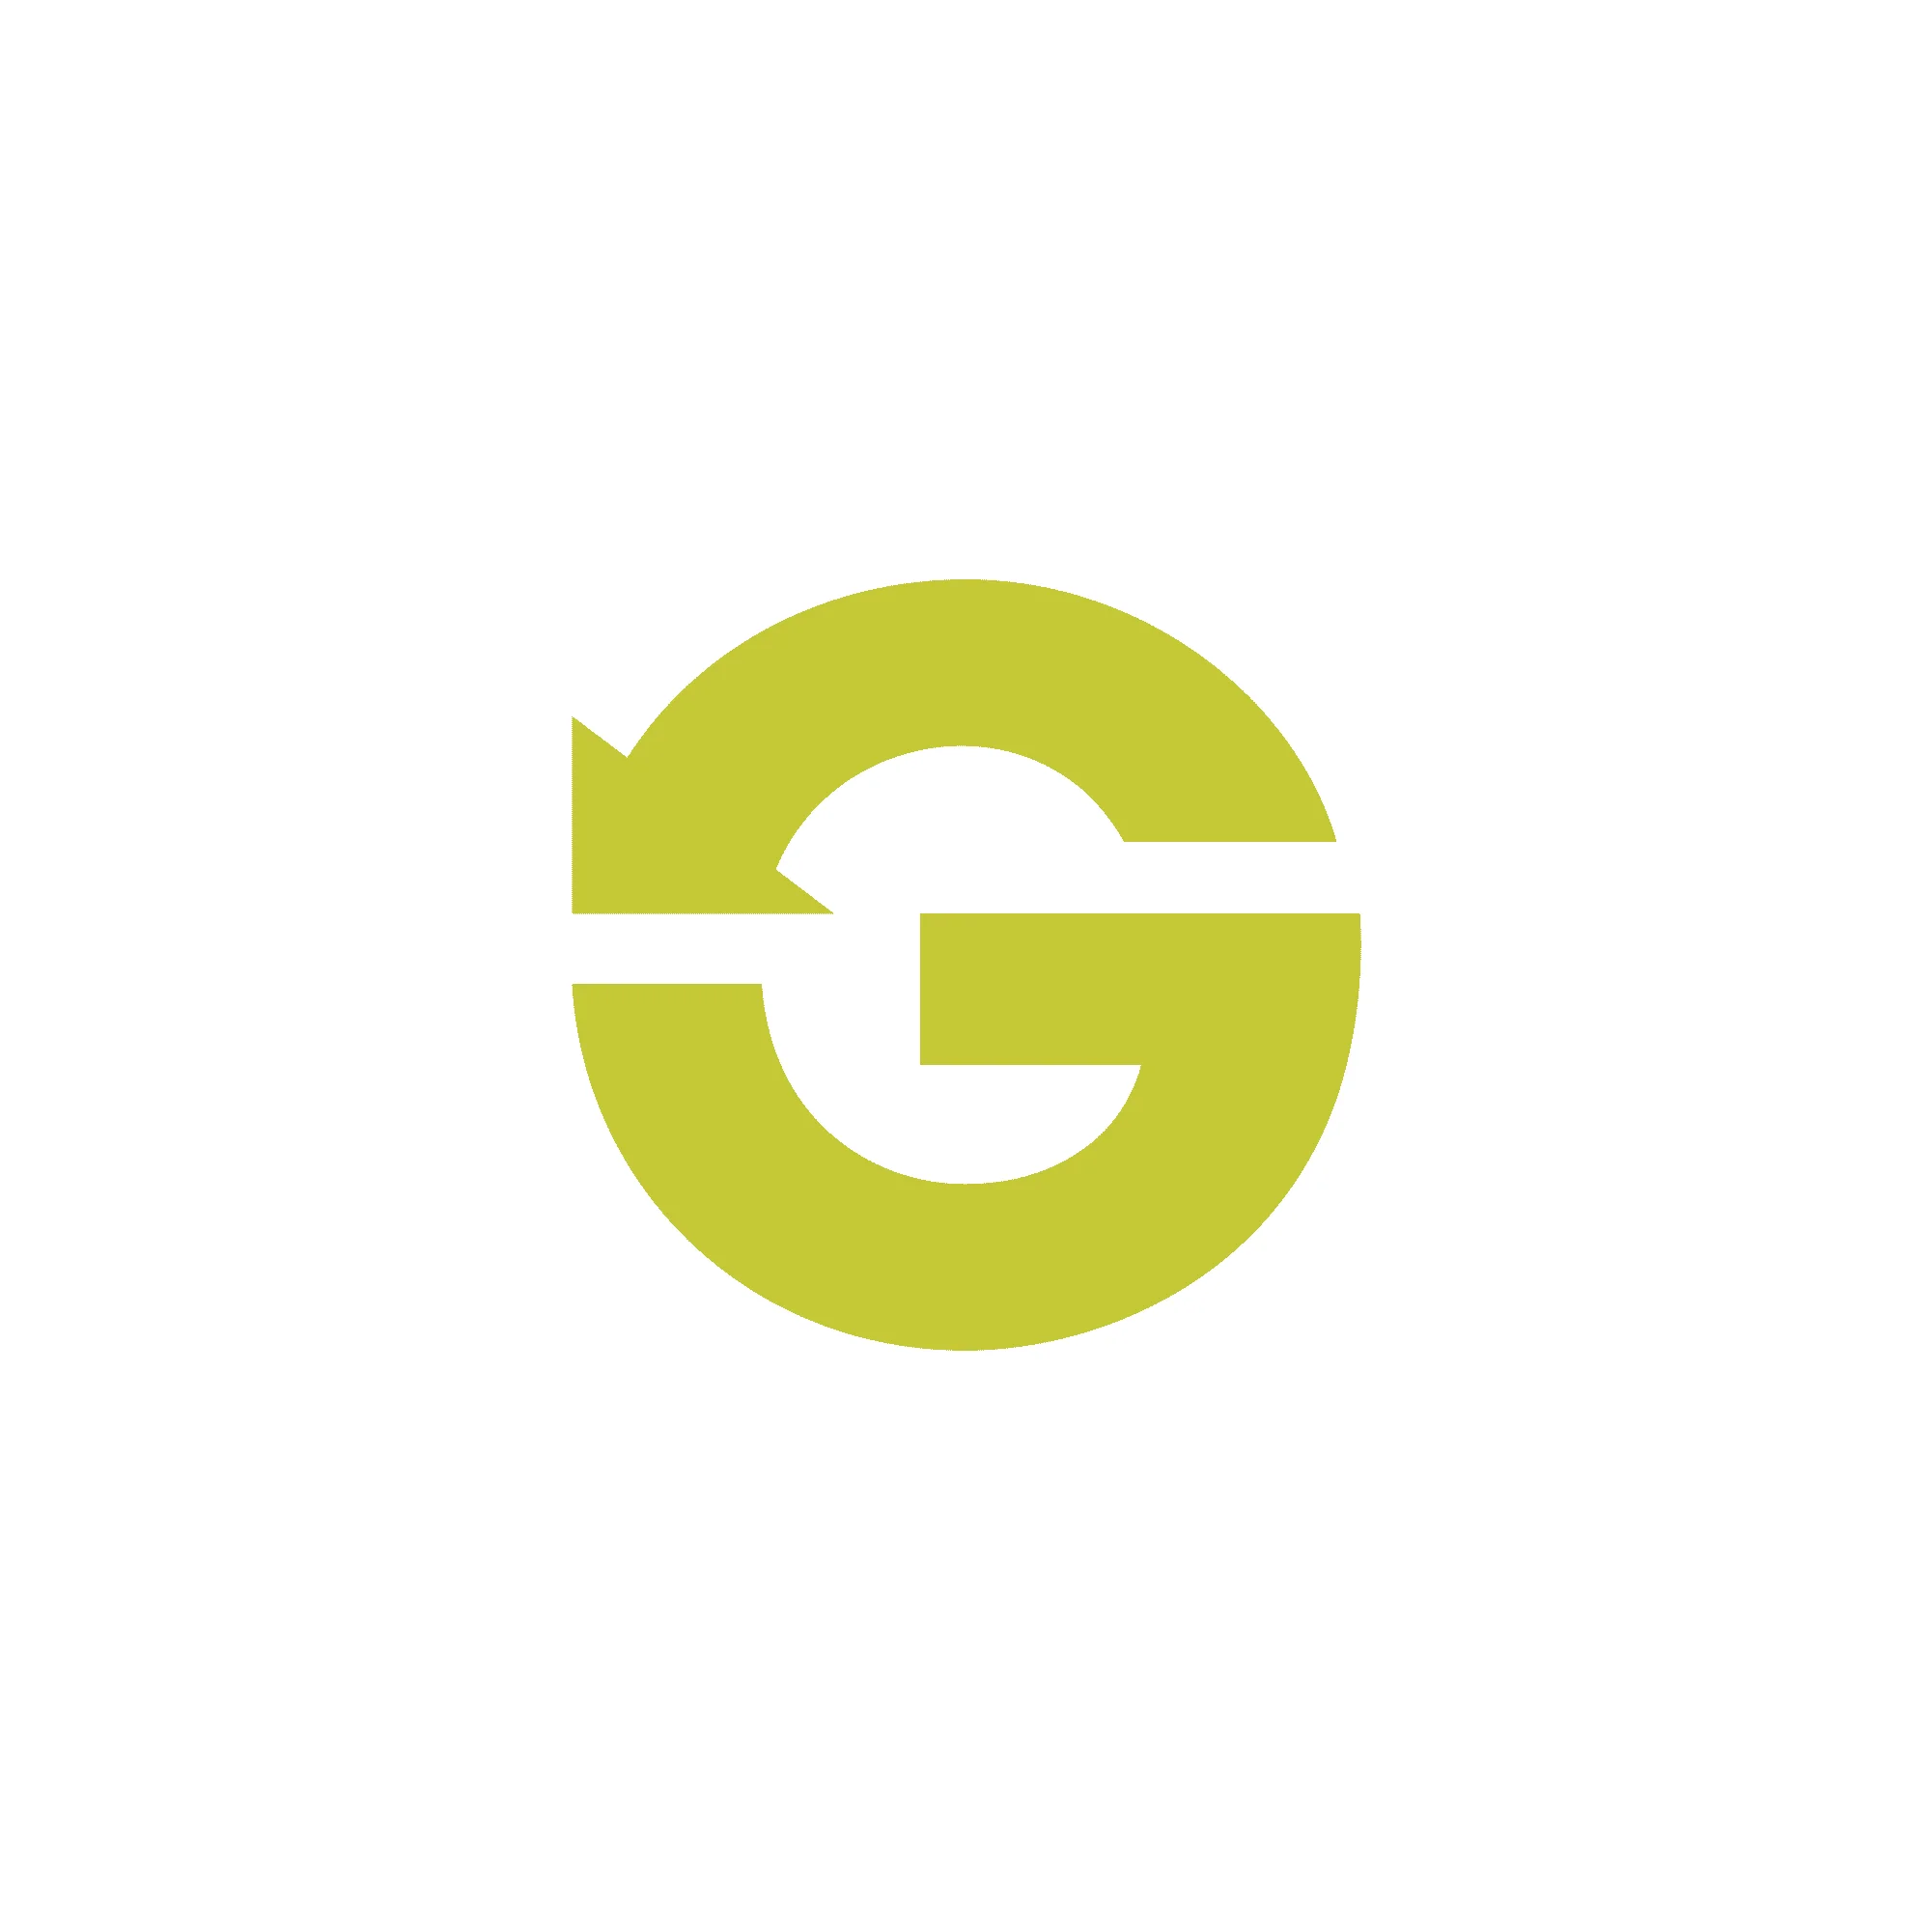 Branding logo design "G" with an arrow, green